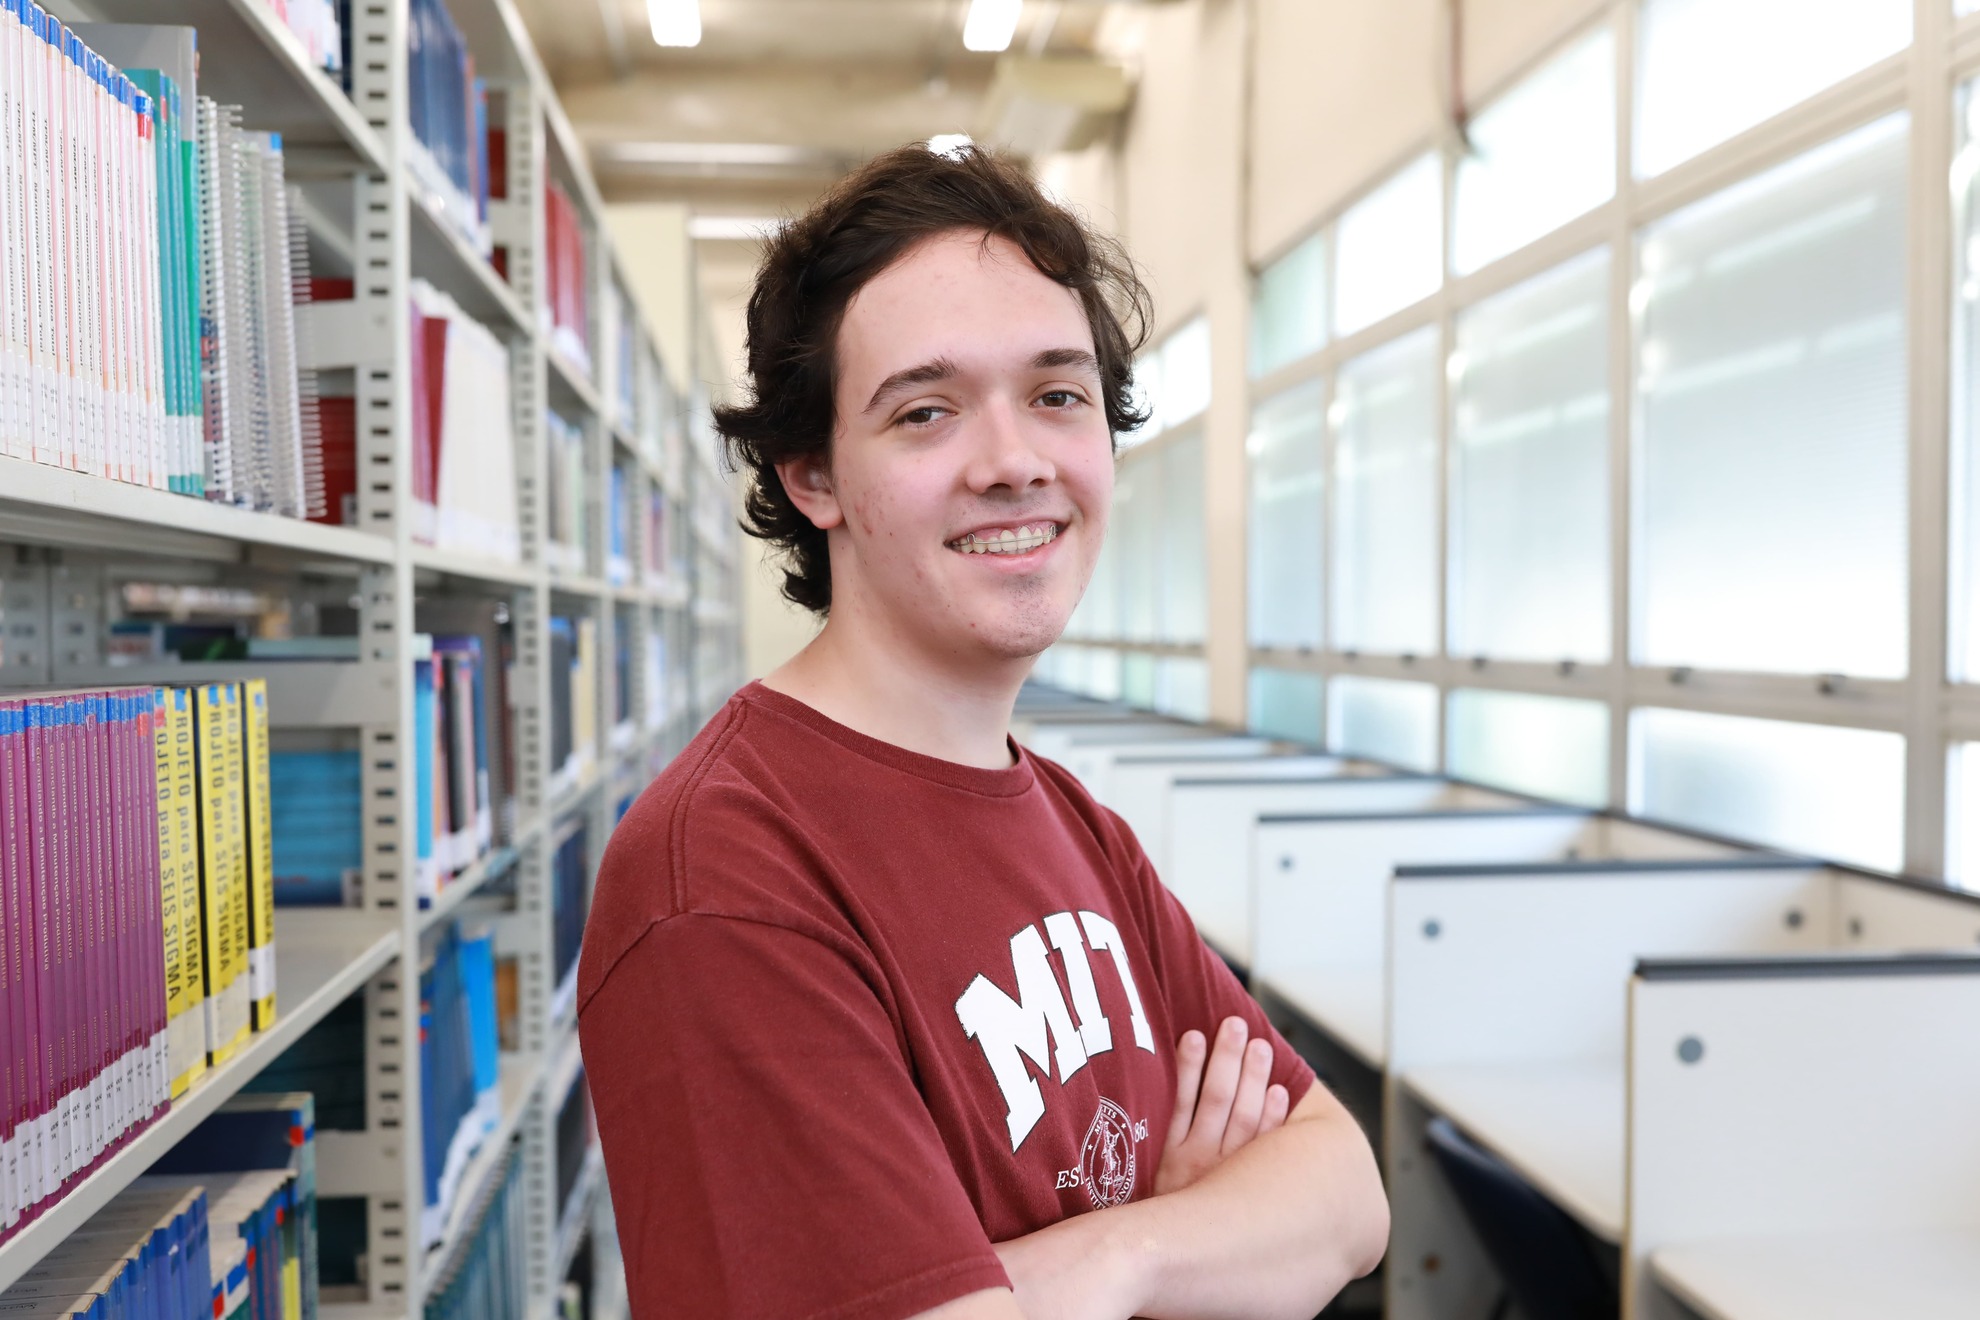 Pedro Lucas Lanaro Sponchiado vai estudar no MIT.